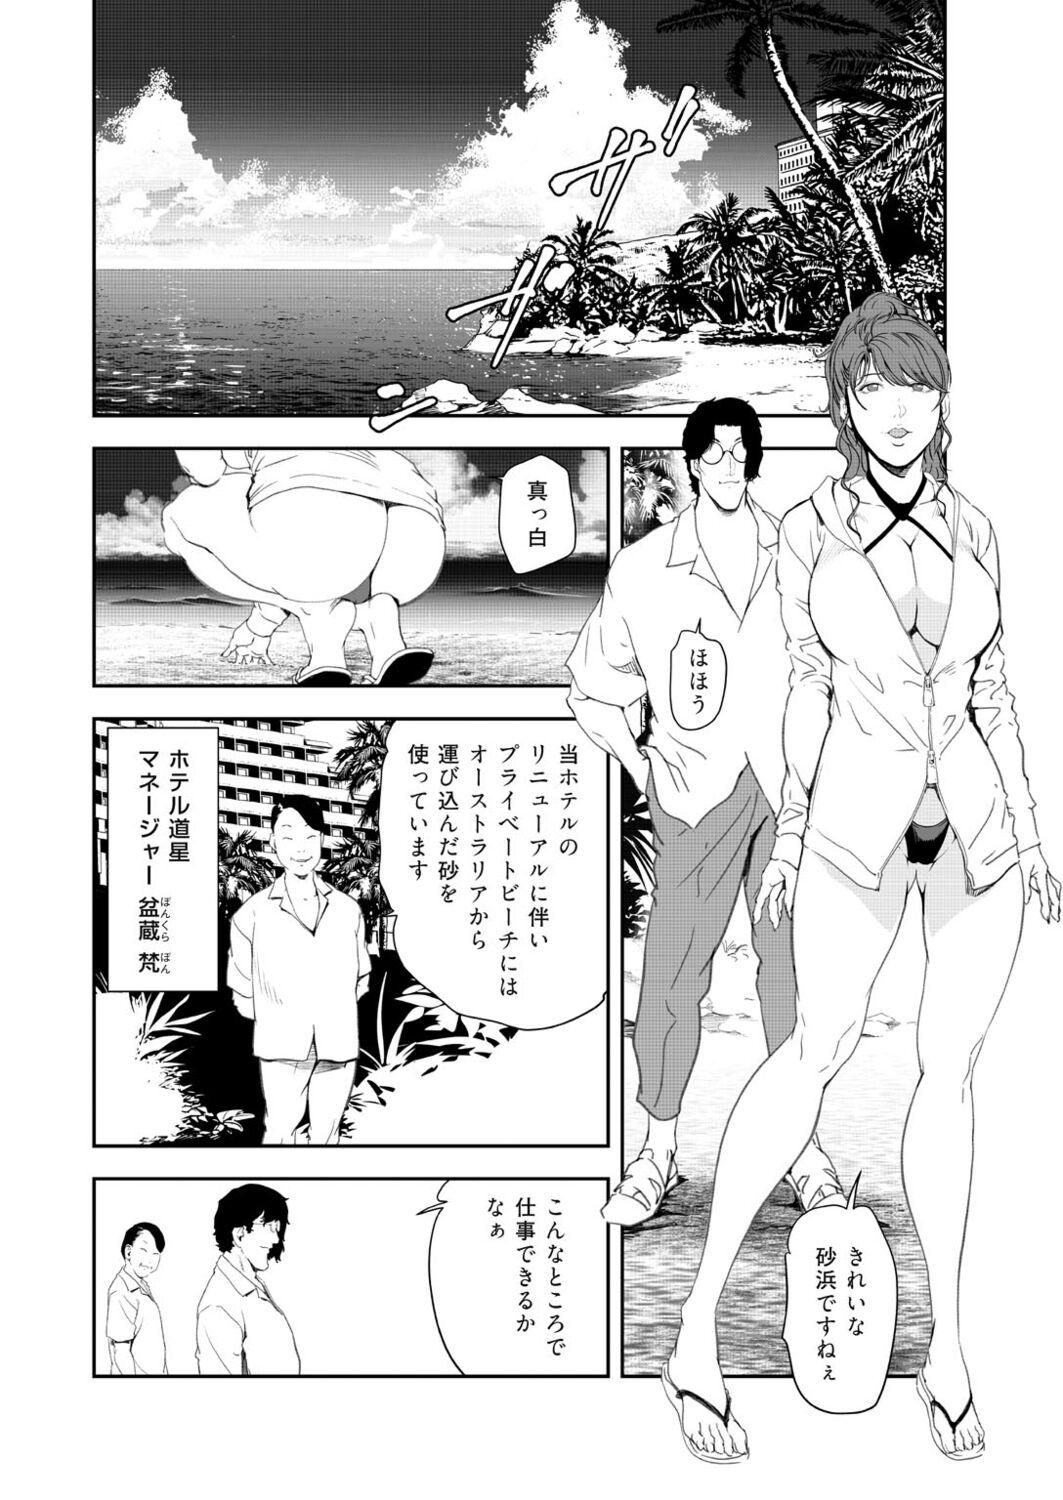 Nasty Free Porn Nikuhisyo Yukiko 41 Sfm - Page 4